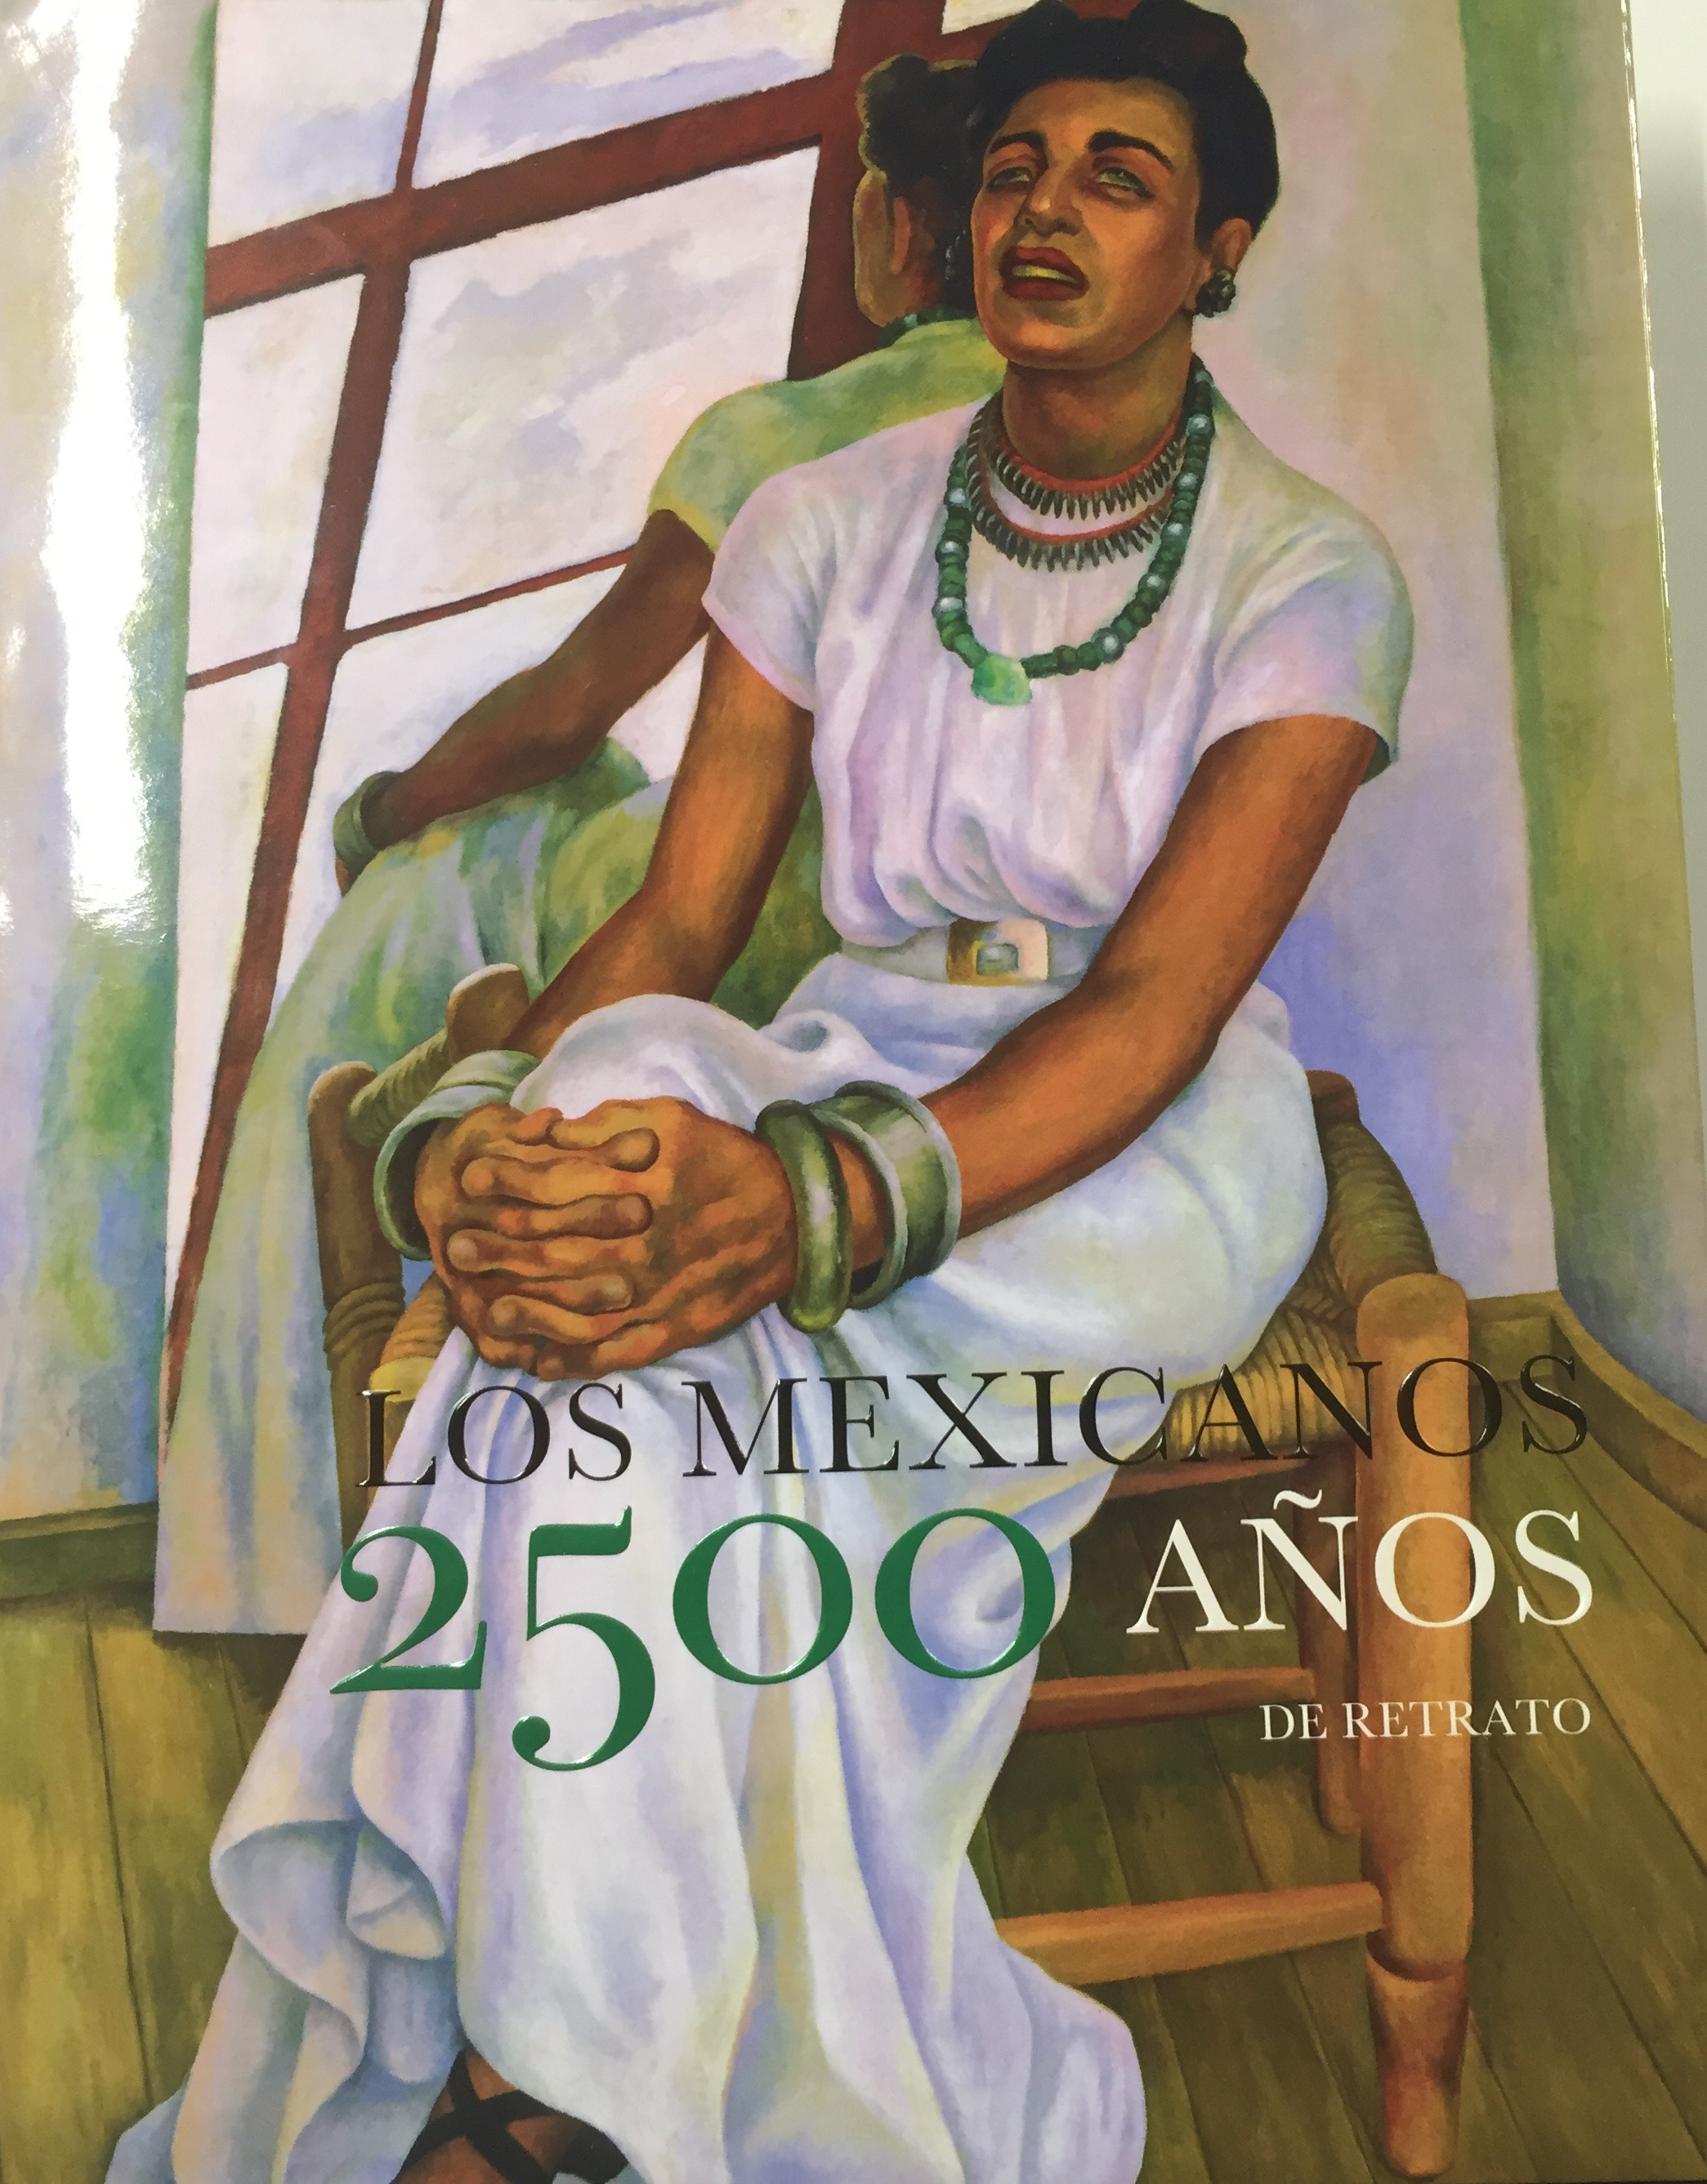 Los Mexicanos, 2500 años de retrato